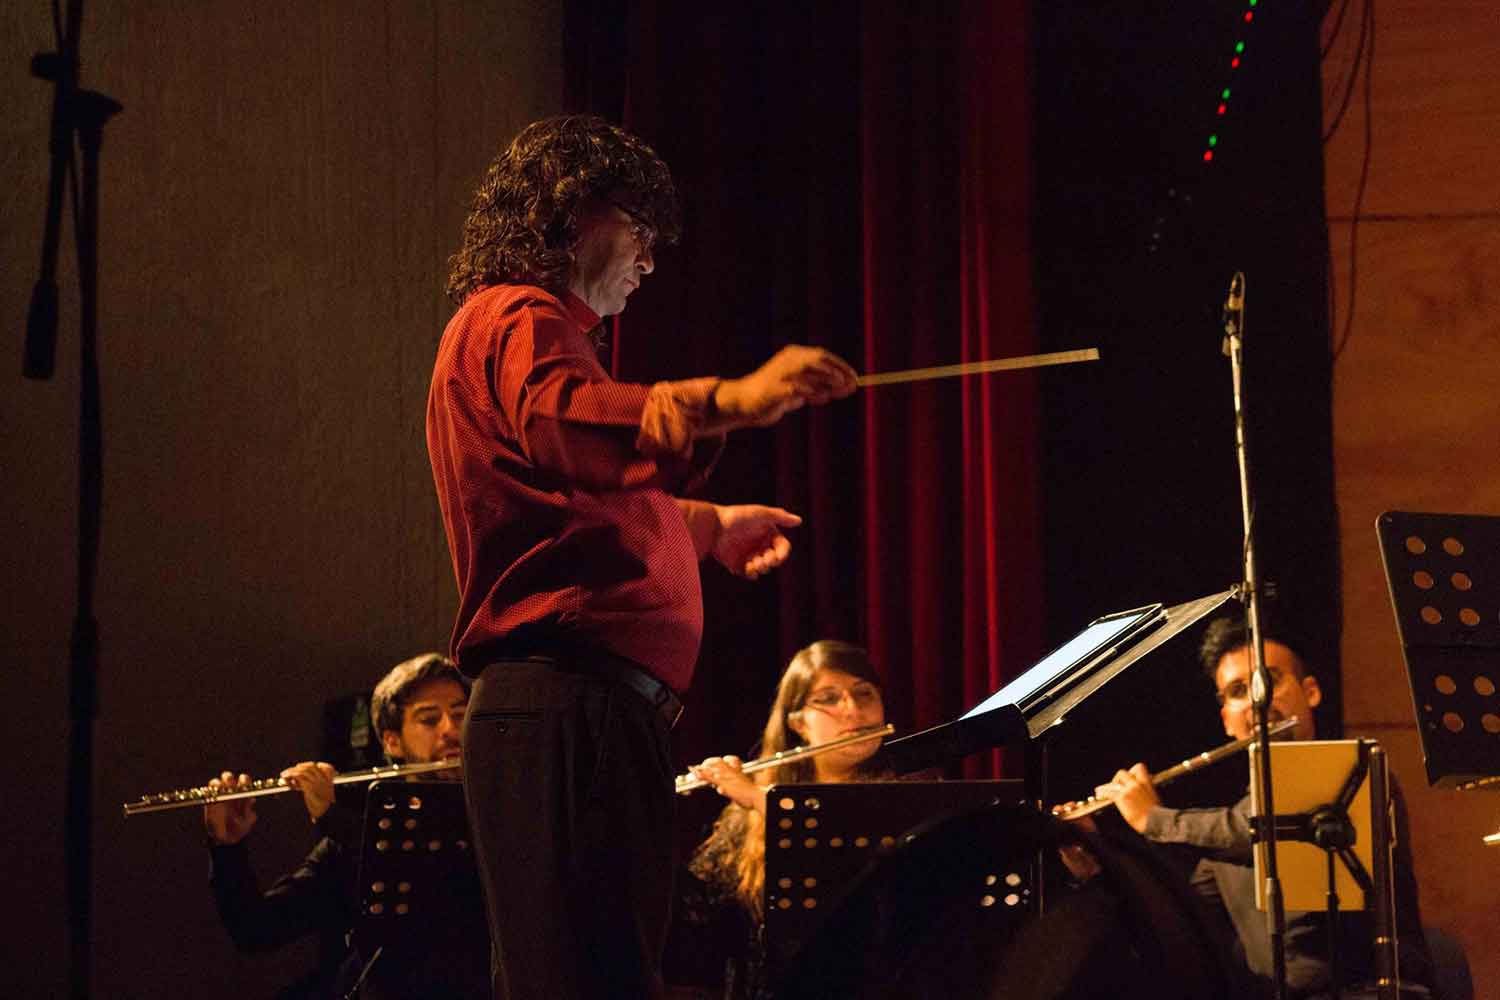  Referentes y nuevos autores: vuelve el Festival Internacional de Música Contemporánea de la U. de Chile